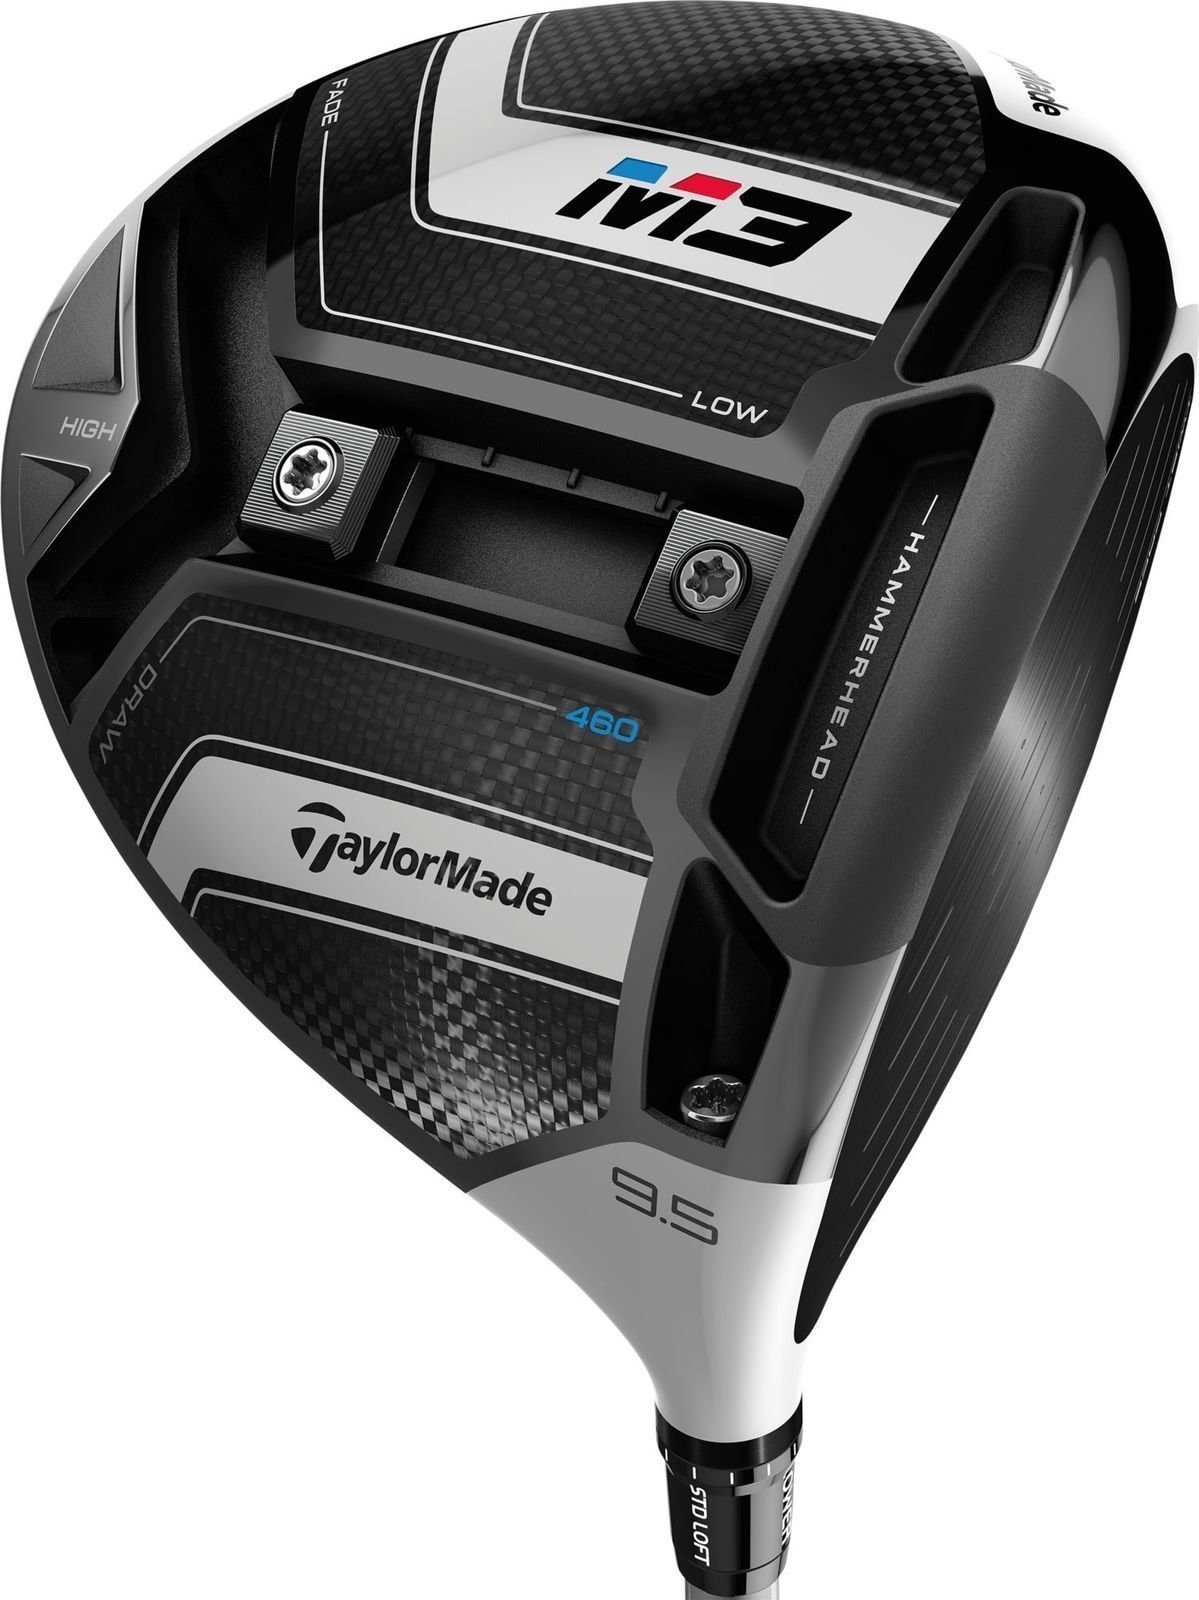 Golfclub - Driver TaylorMade M3 460 Driver MRC60 9,5 Right Hand Stiff